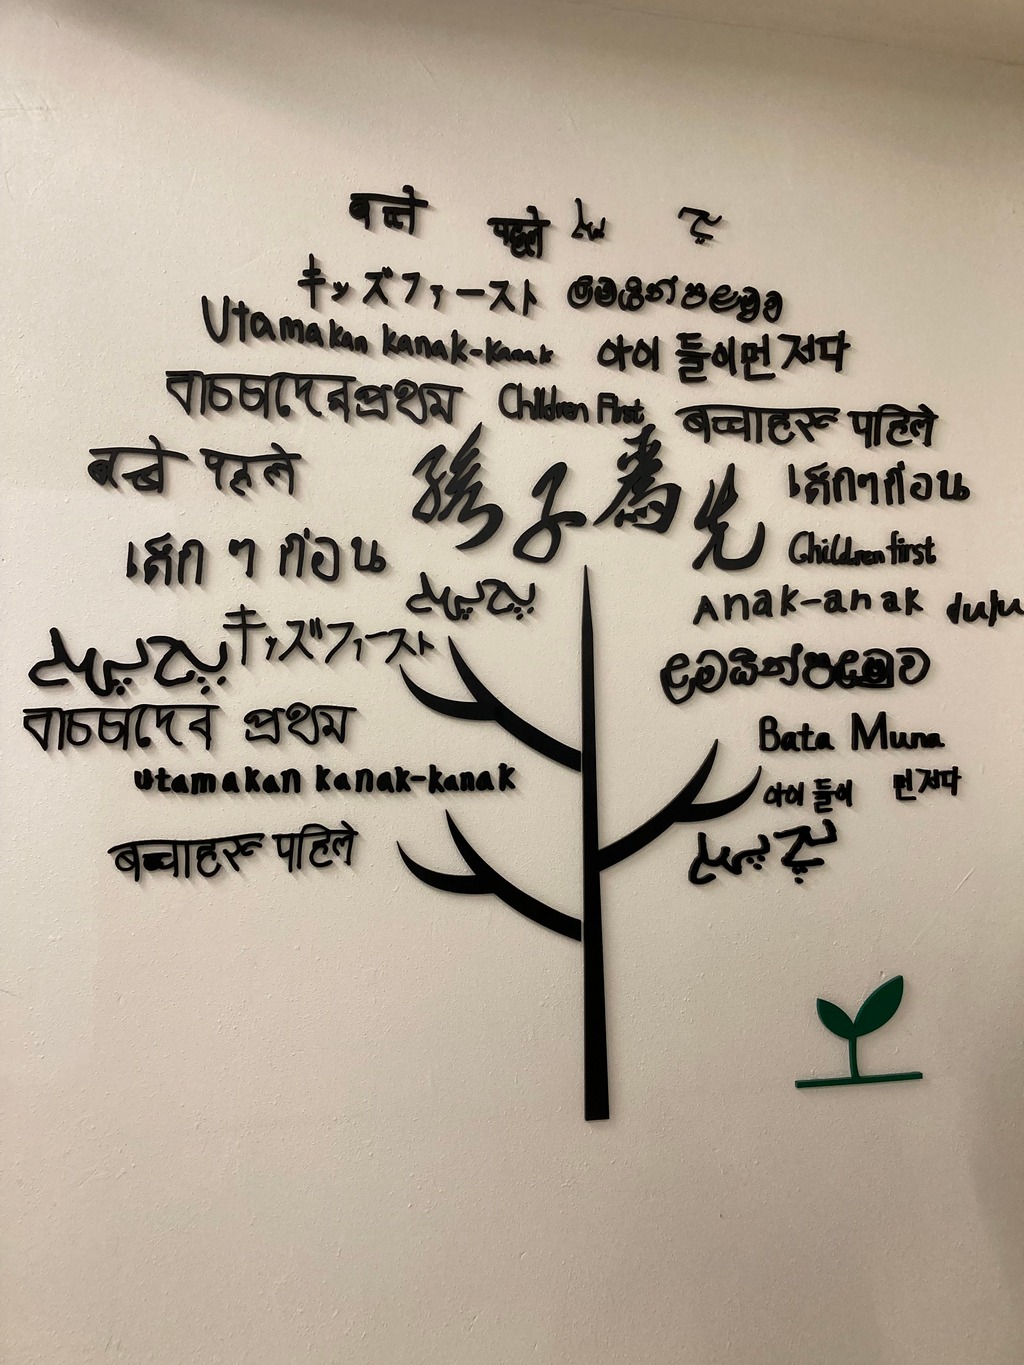 「孩子為先」是學校的辦學理念，牆上的字由校內不同國籍的同學合作撰寫13種「孩子為先」的譯文。